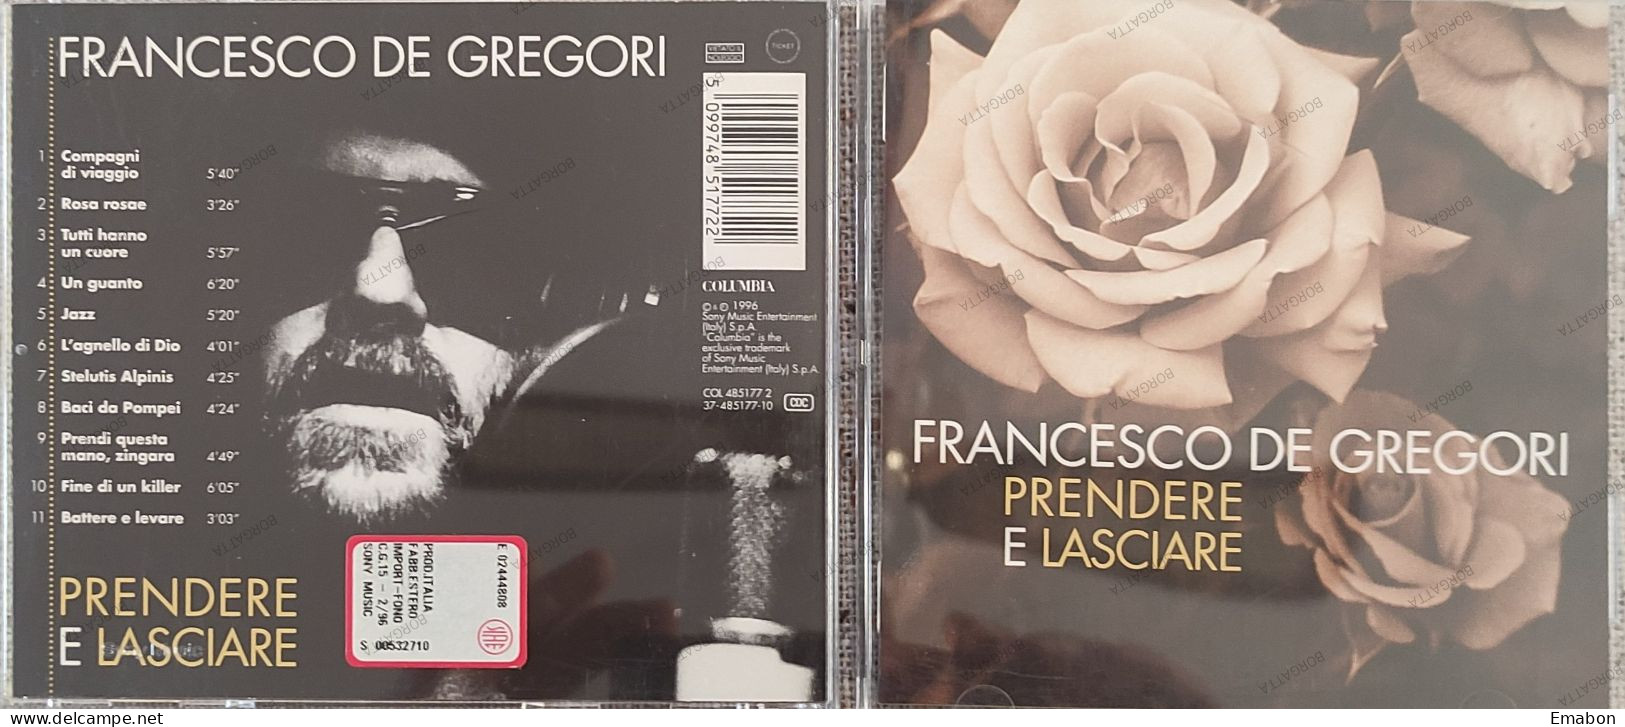 BORGATTA - ITALIANA - Cd FRANCESCO DE GREGORI - PRENDERE E LASCIARE - COLUMBIA  1996 -  USATO In Buono Stato - Altri - Musica Italiana